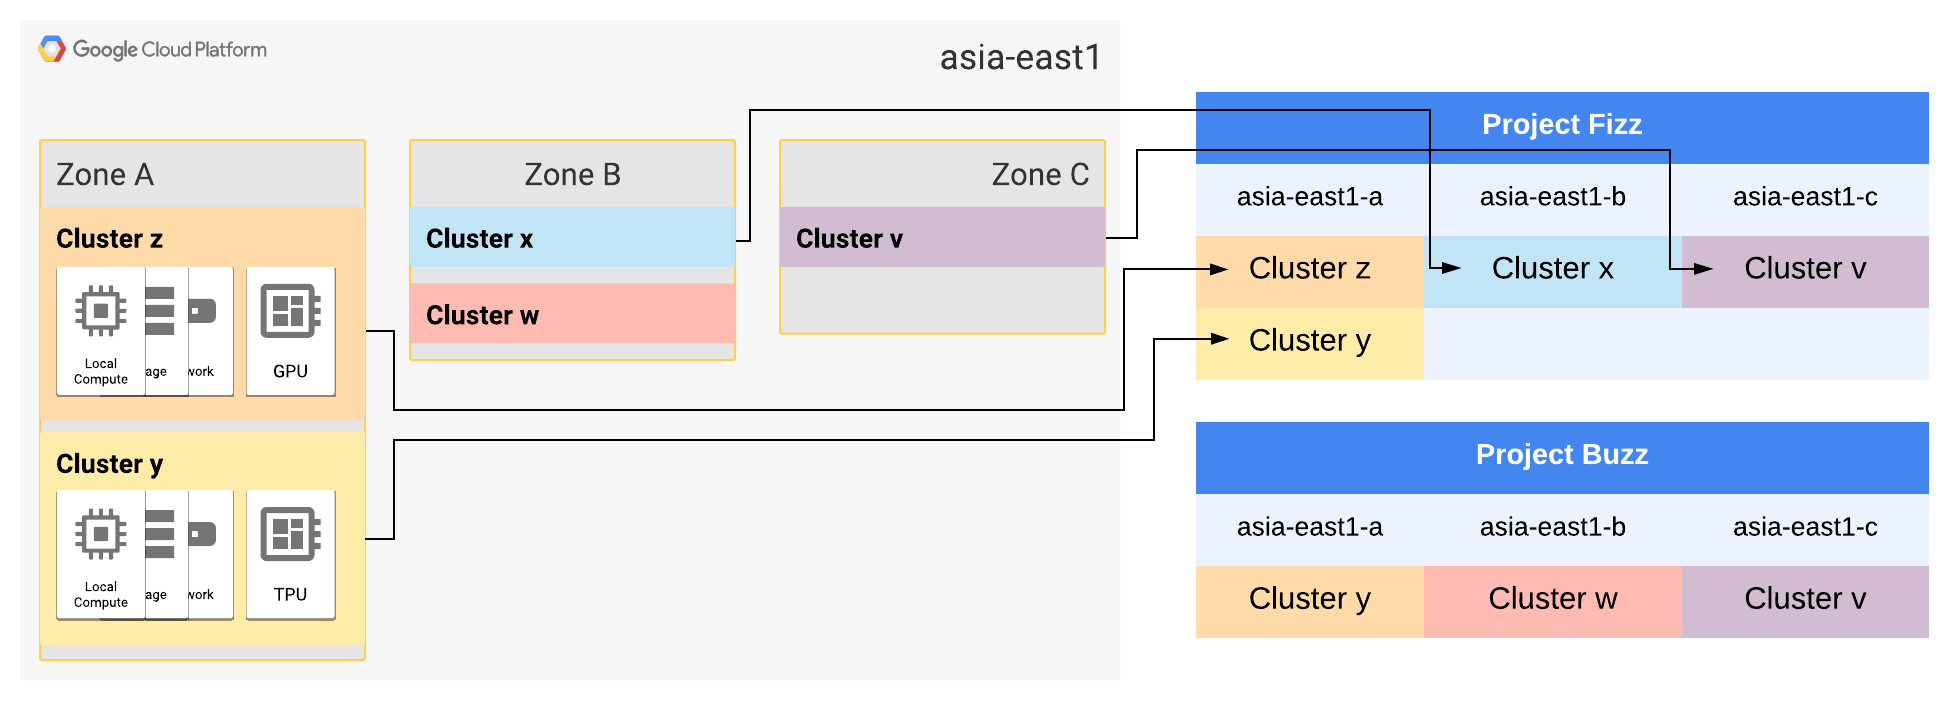 As zonas A asia-east1 A e B estão expandidas para dois clusters.